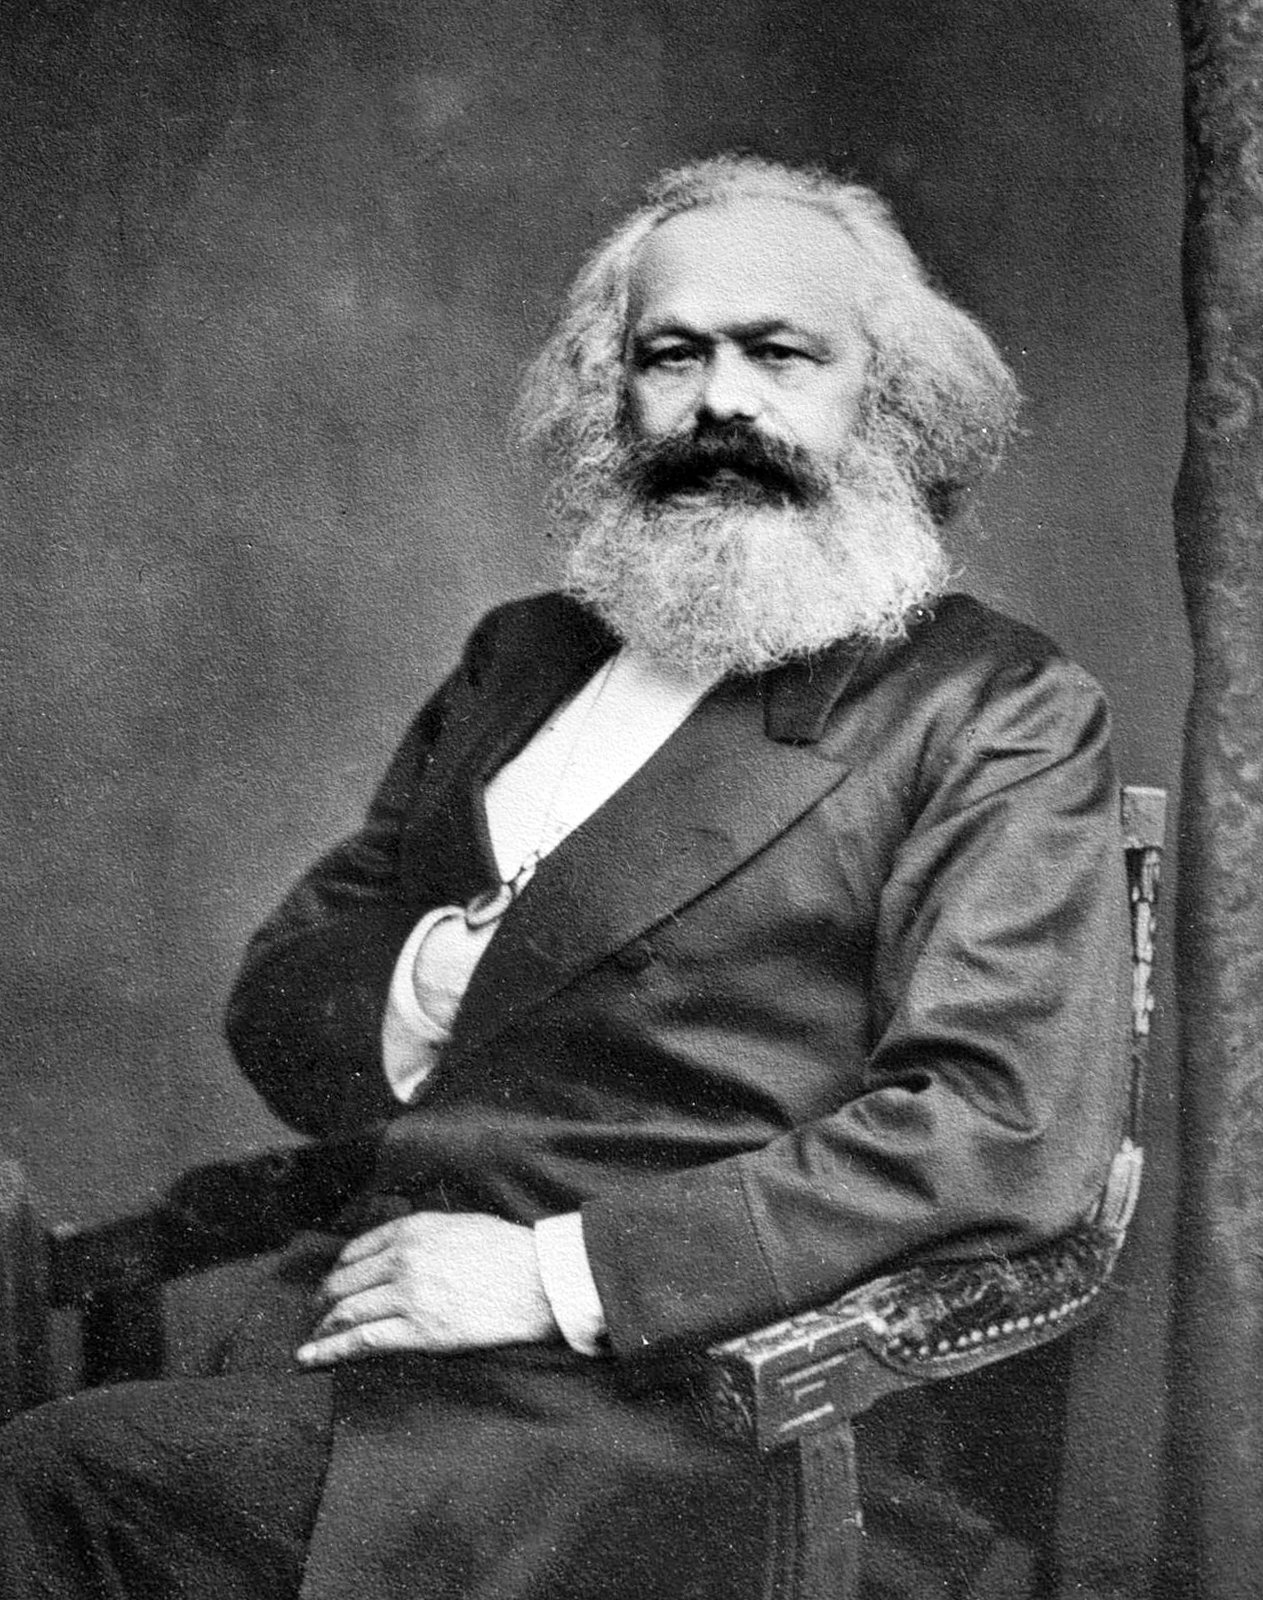 Marx, con perdón